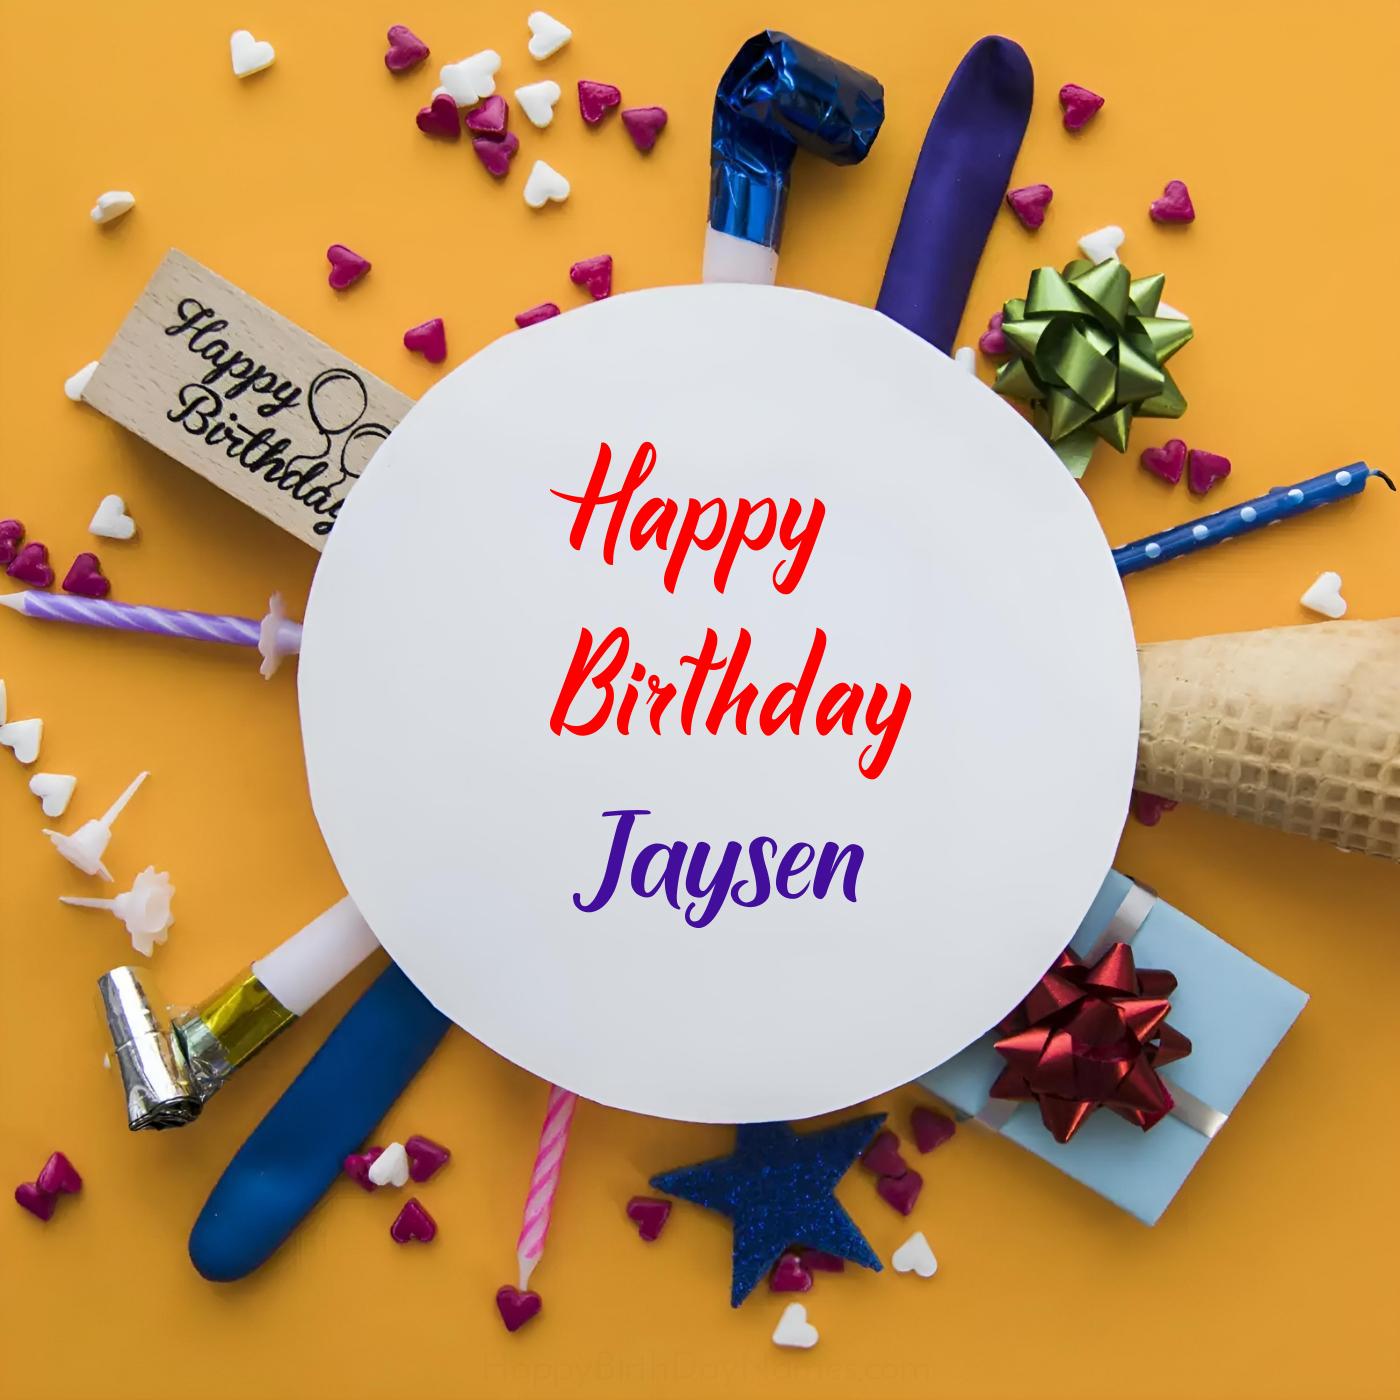 Happy Birthday Jaysen Round Frame Card